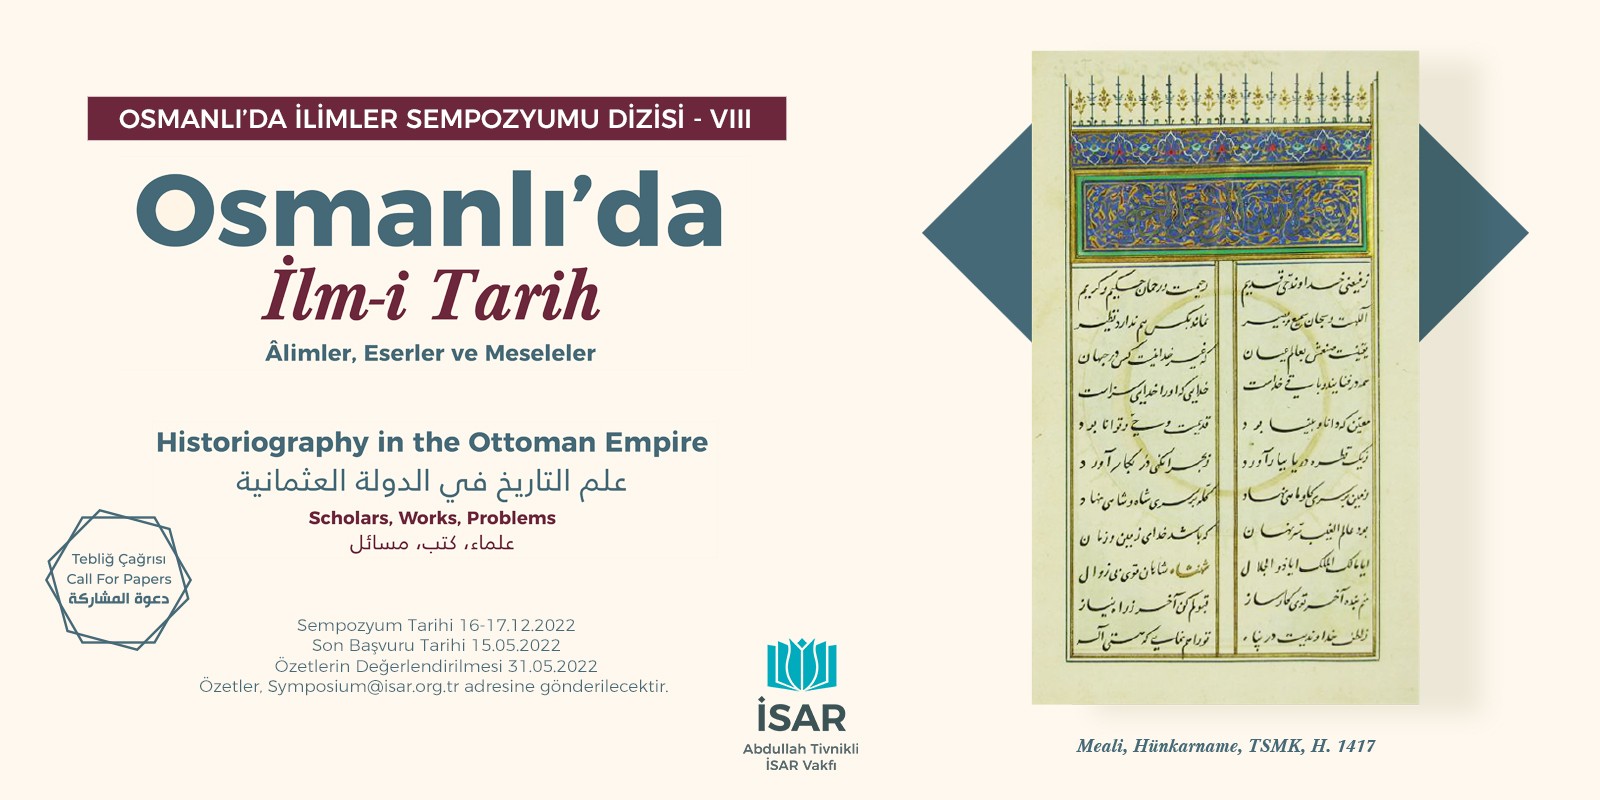 Osmanlı'da İlm-i Tarih Sempozyumu